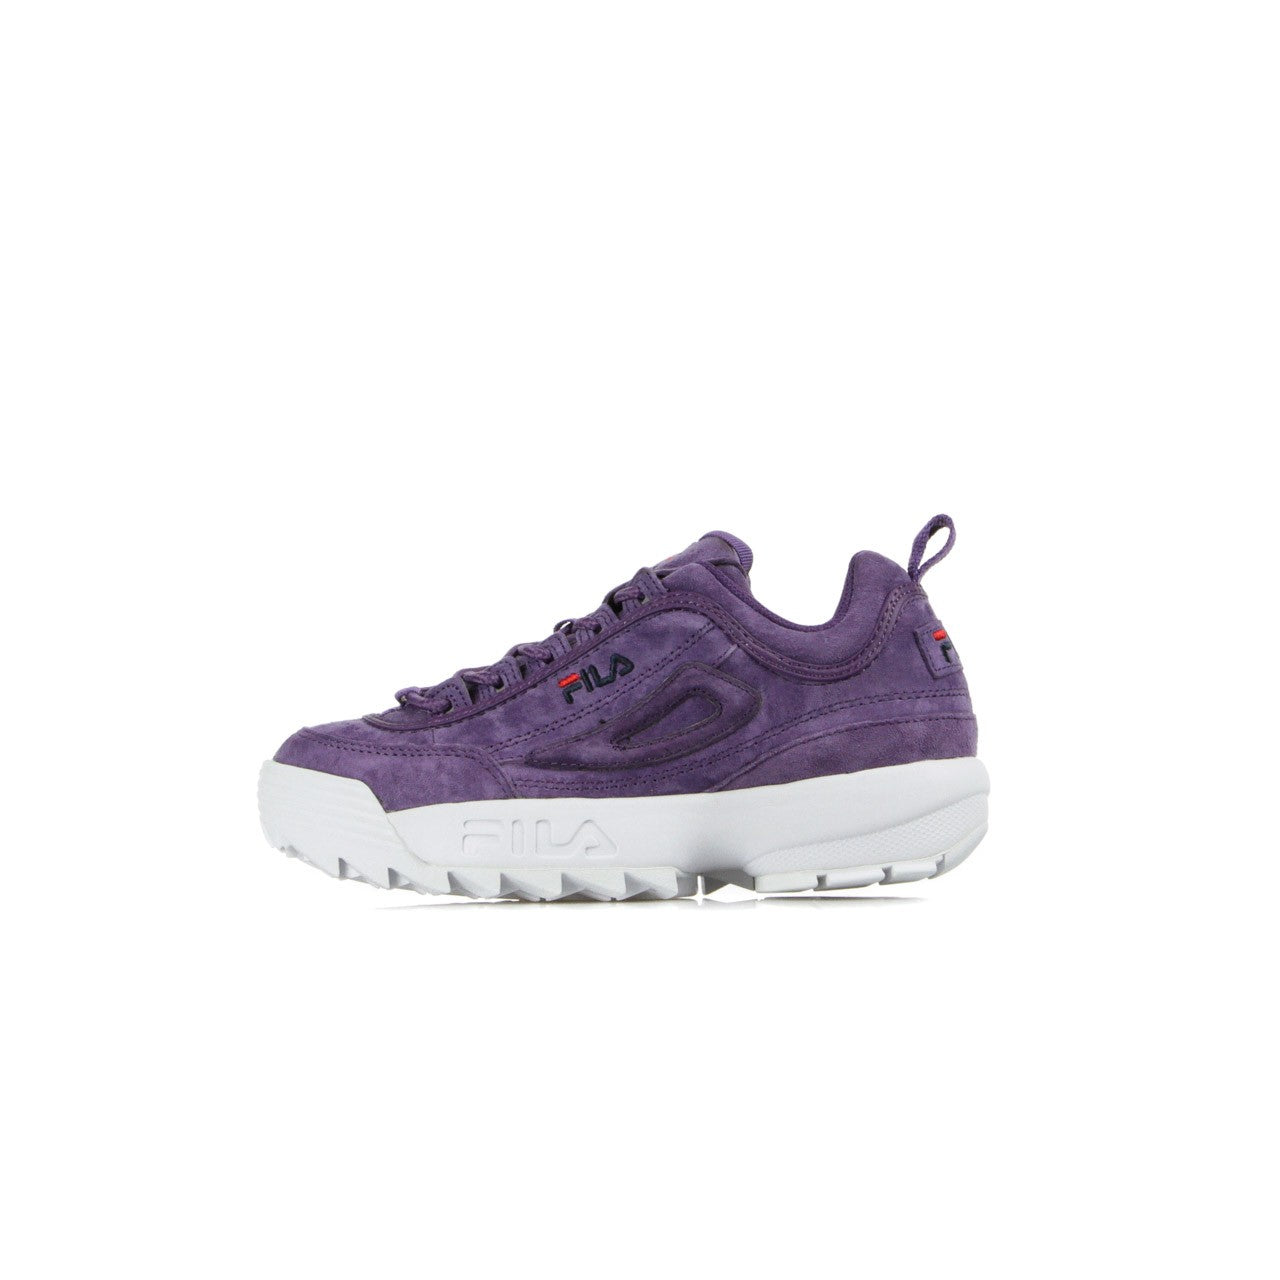 Low Women's Shoe Disruptor S Low Wmn Tillandsia Purple